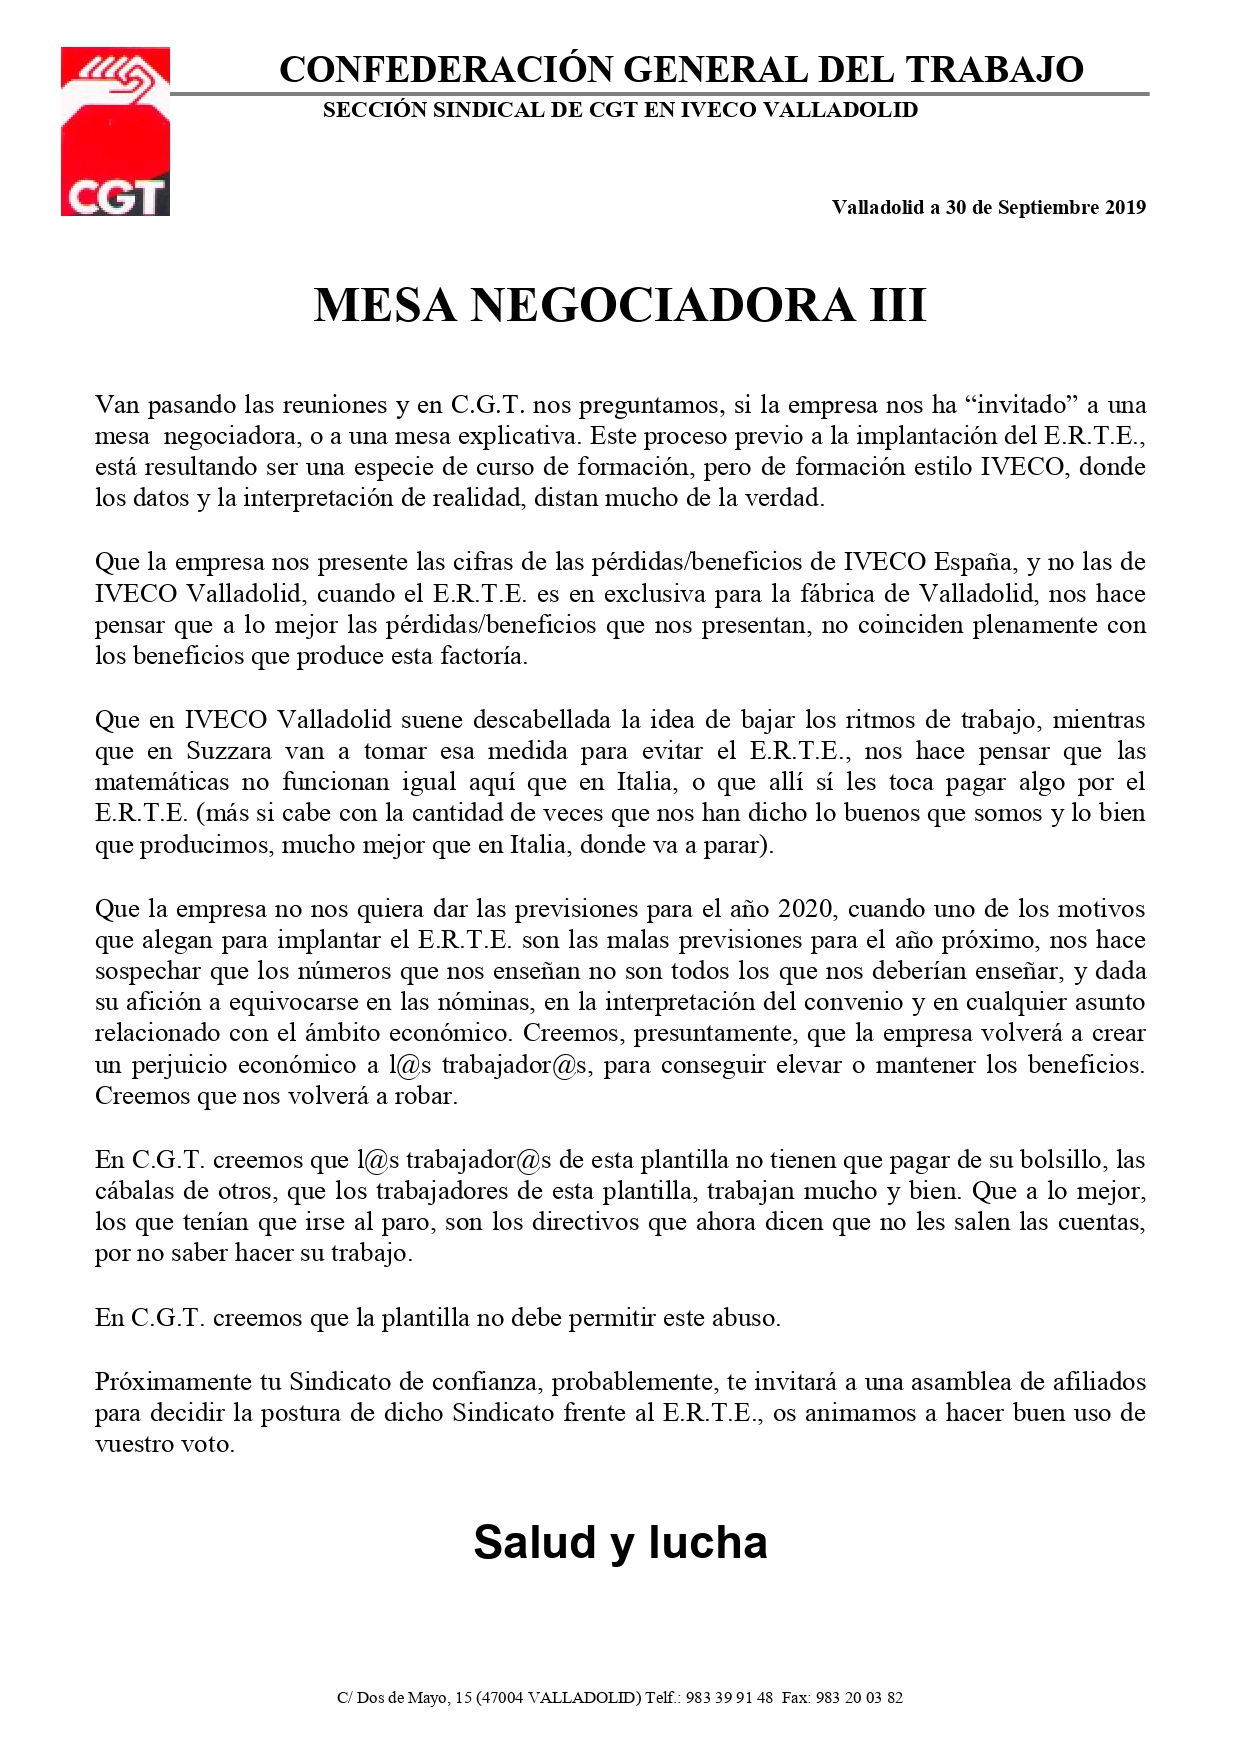 CGT Iveco Vall (30 de sep 2019)_page-0001